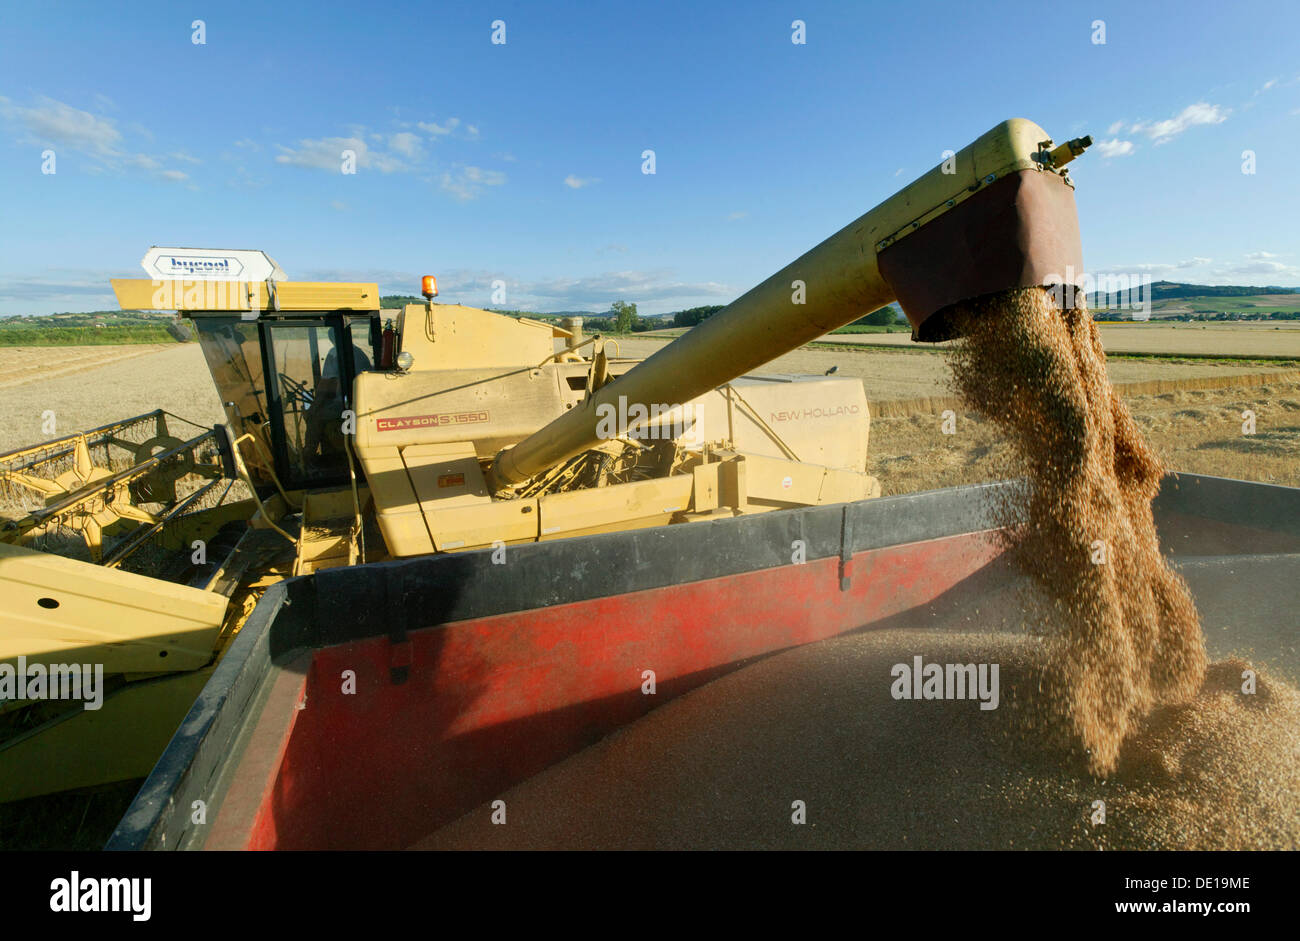 Combine harvester emptying grain into a farm truck, Moissat, Limagne plain, Puy de Dome, Auvergne, France, Europe Stock Photo